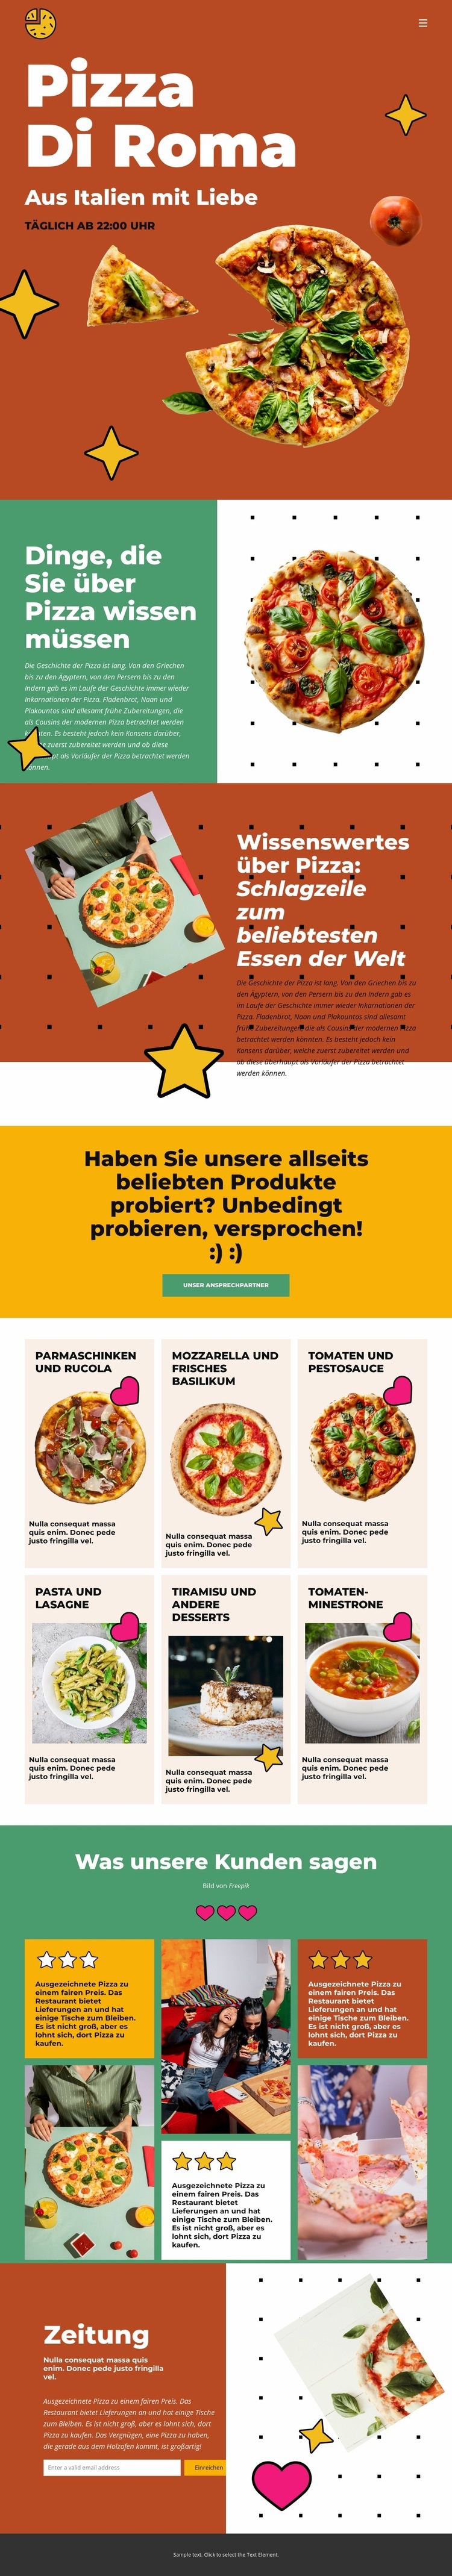 Dinge, die Sie über Pizza wissen müssen Website-Modell